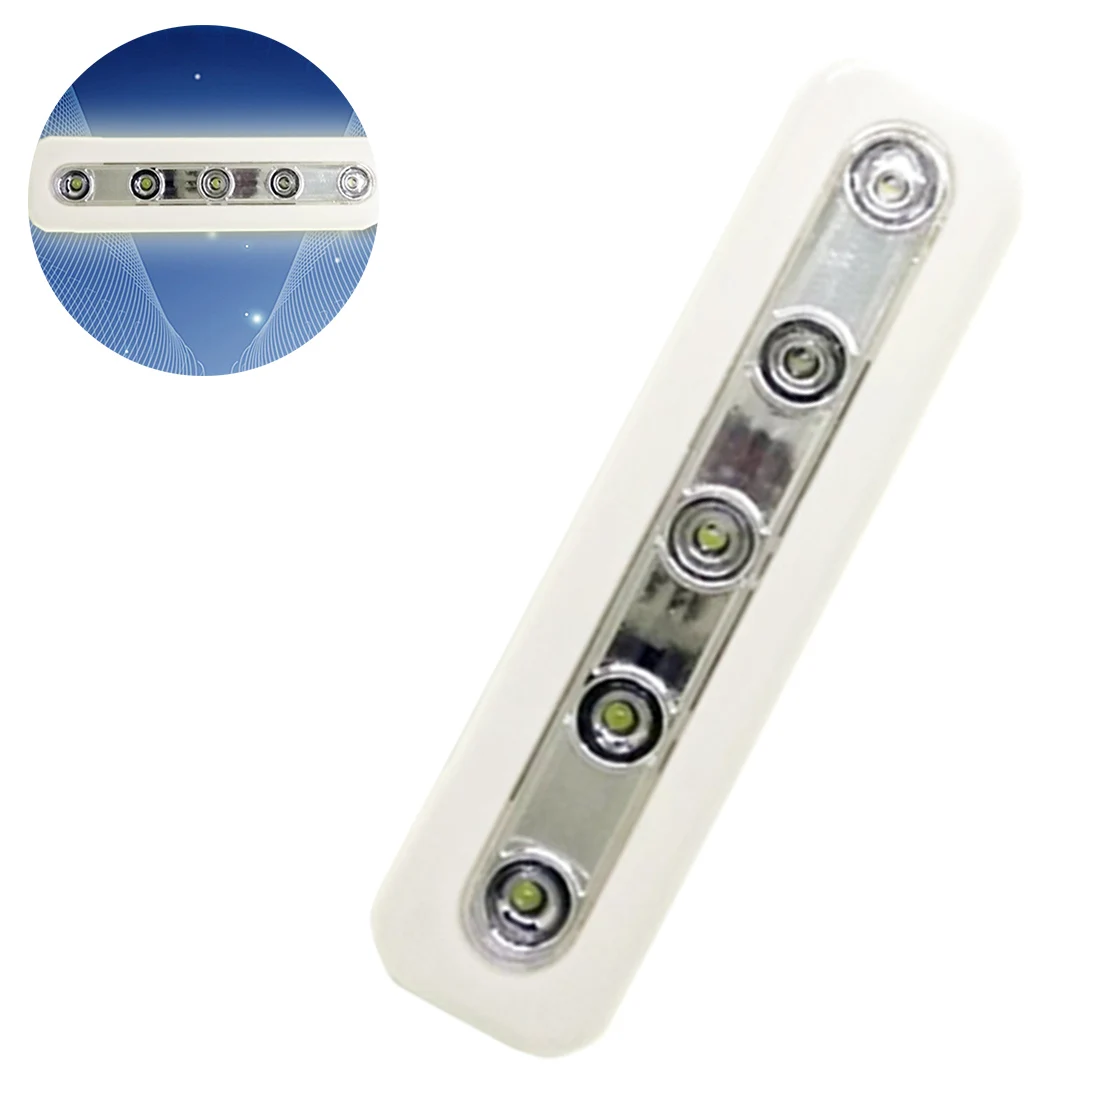 Светодиодный мини-светильник s 5 светодиодный s с селфи-палкой, беспроводной настенный светильник, аварийный шкаф, Ночной светильник, шкаф, светильник 18*4,5*2,5 см